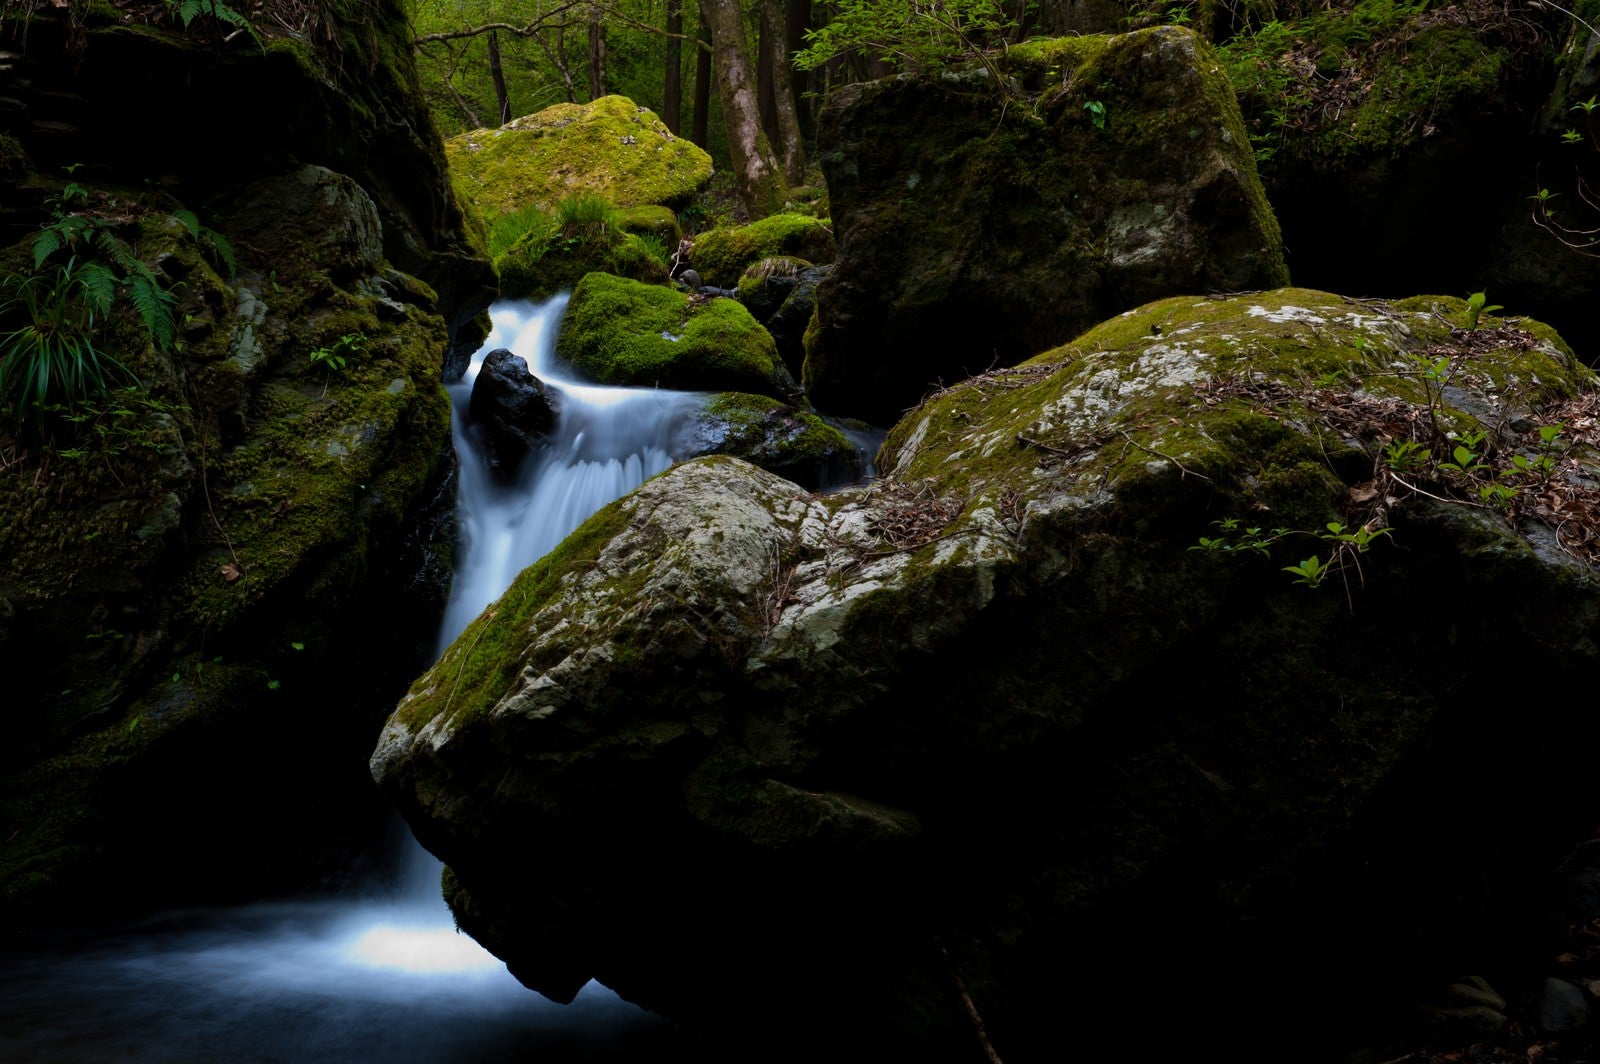 「海沢探勝路の三ツ釜の滝」の写真